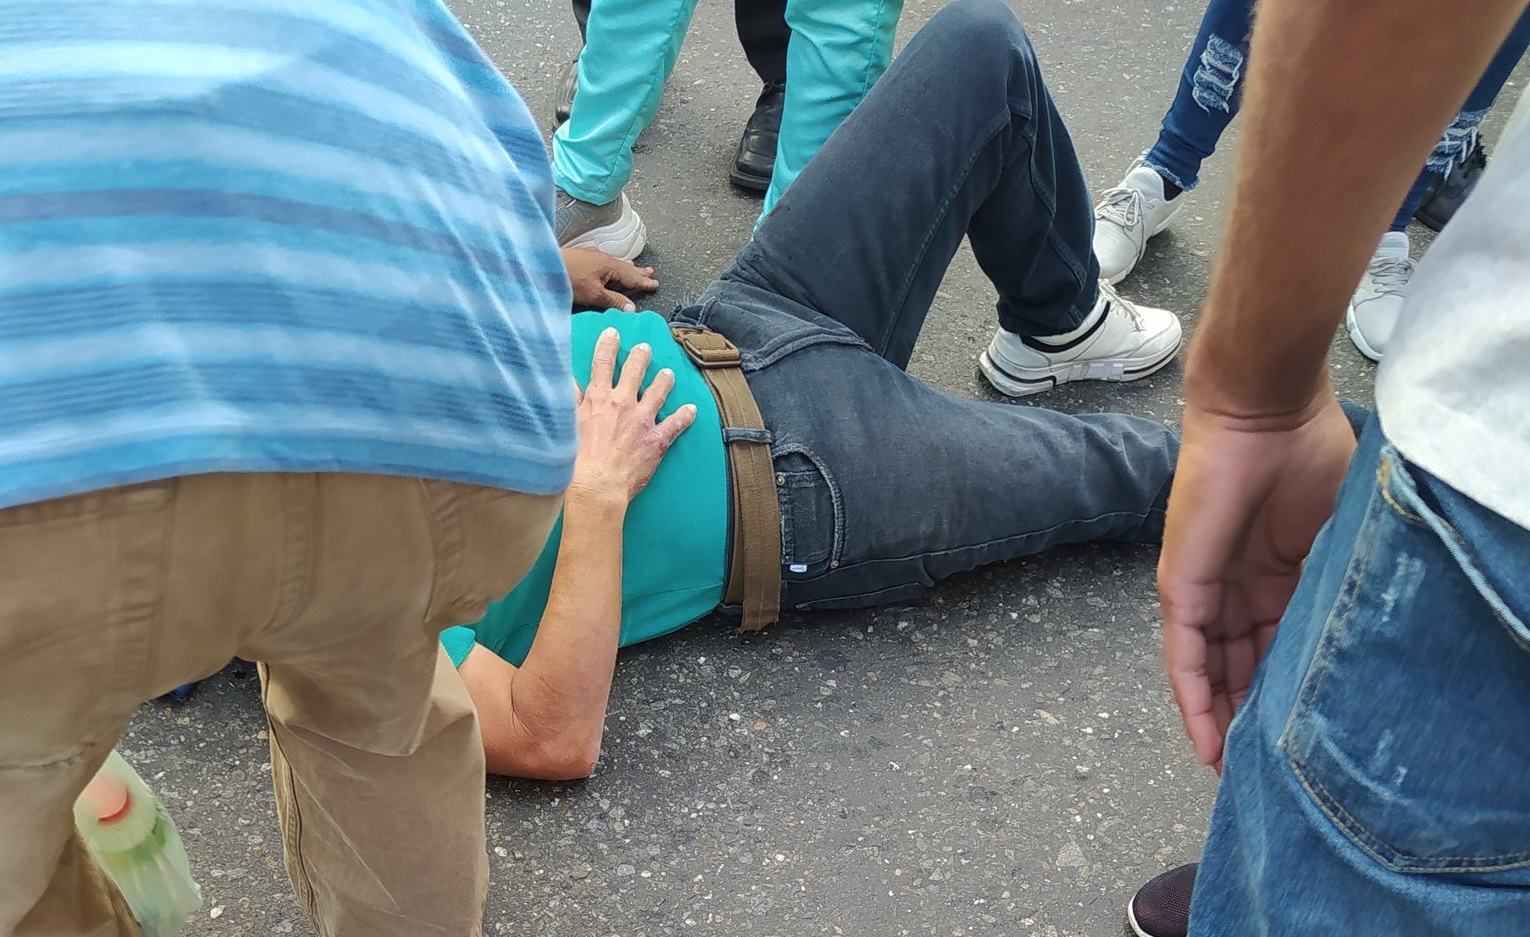 Persecución en Plaza Venezuela: Conductor se dio a la fuga tras atropellar a peatón (Fotos)